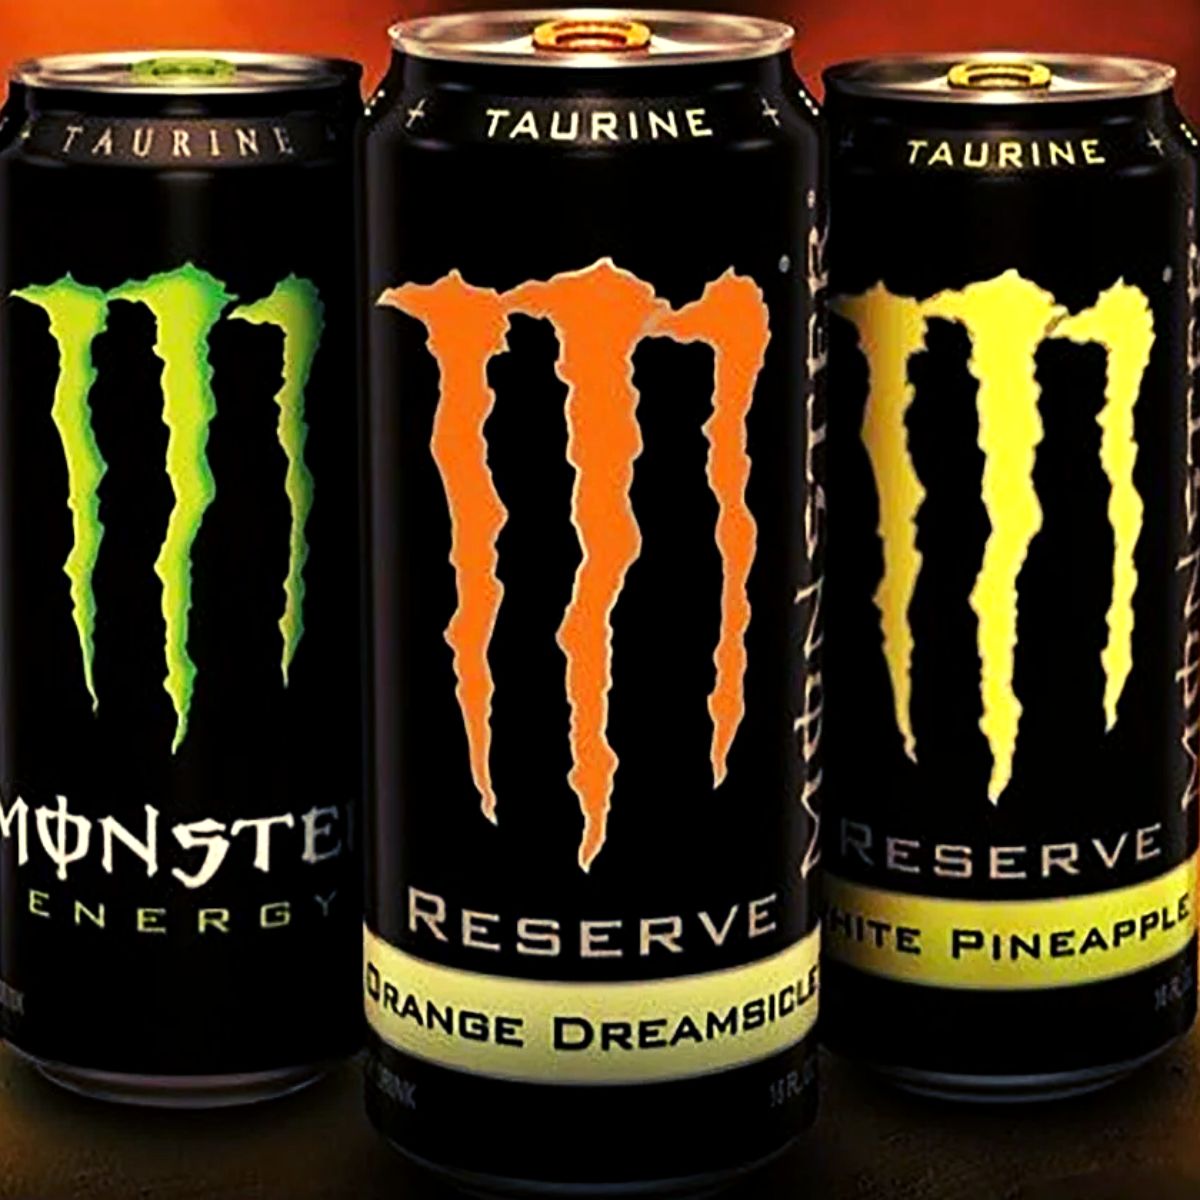 Monster Energy Drink Reserve Orange Dreamsicle